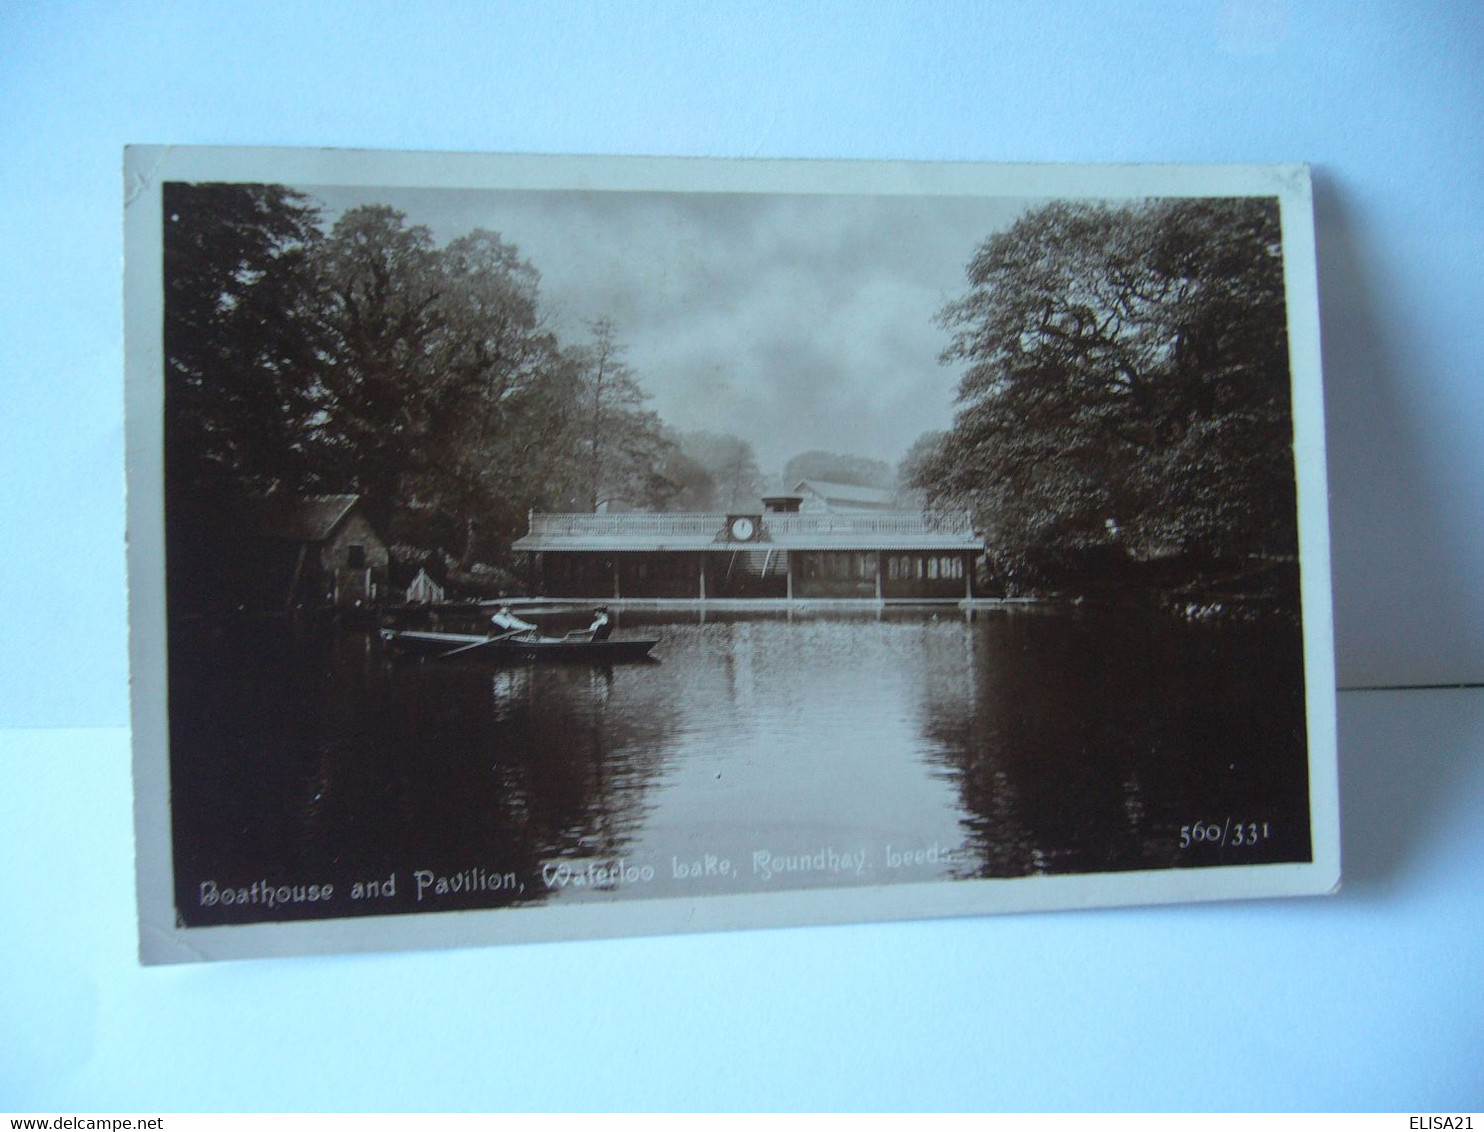 BOATHOUSE AND PAVILLON WATELOO LAKE ROUNDHAY LEEDS ROYAUME UNI ANGLETERRE YORKSHIRE CPA 1920 - Leeds